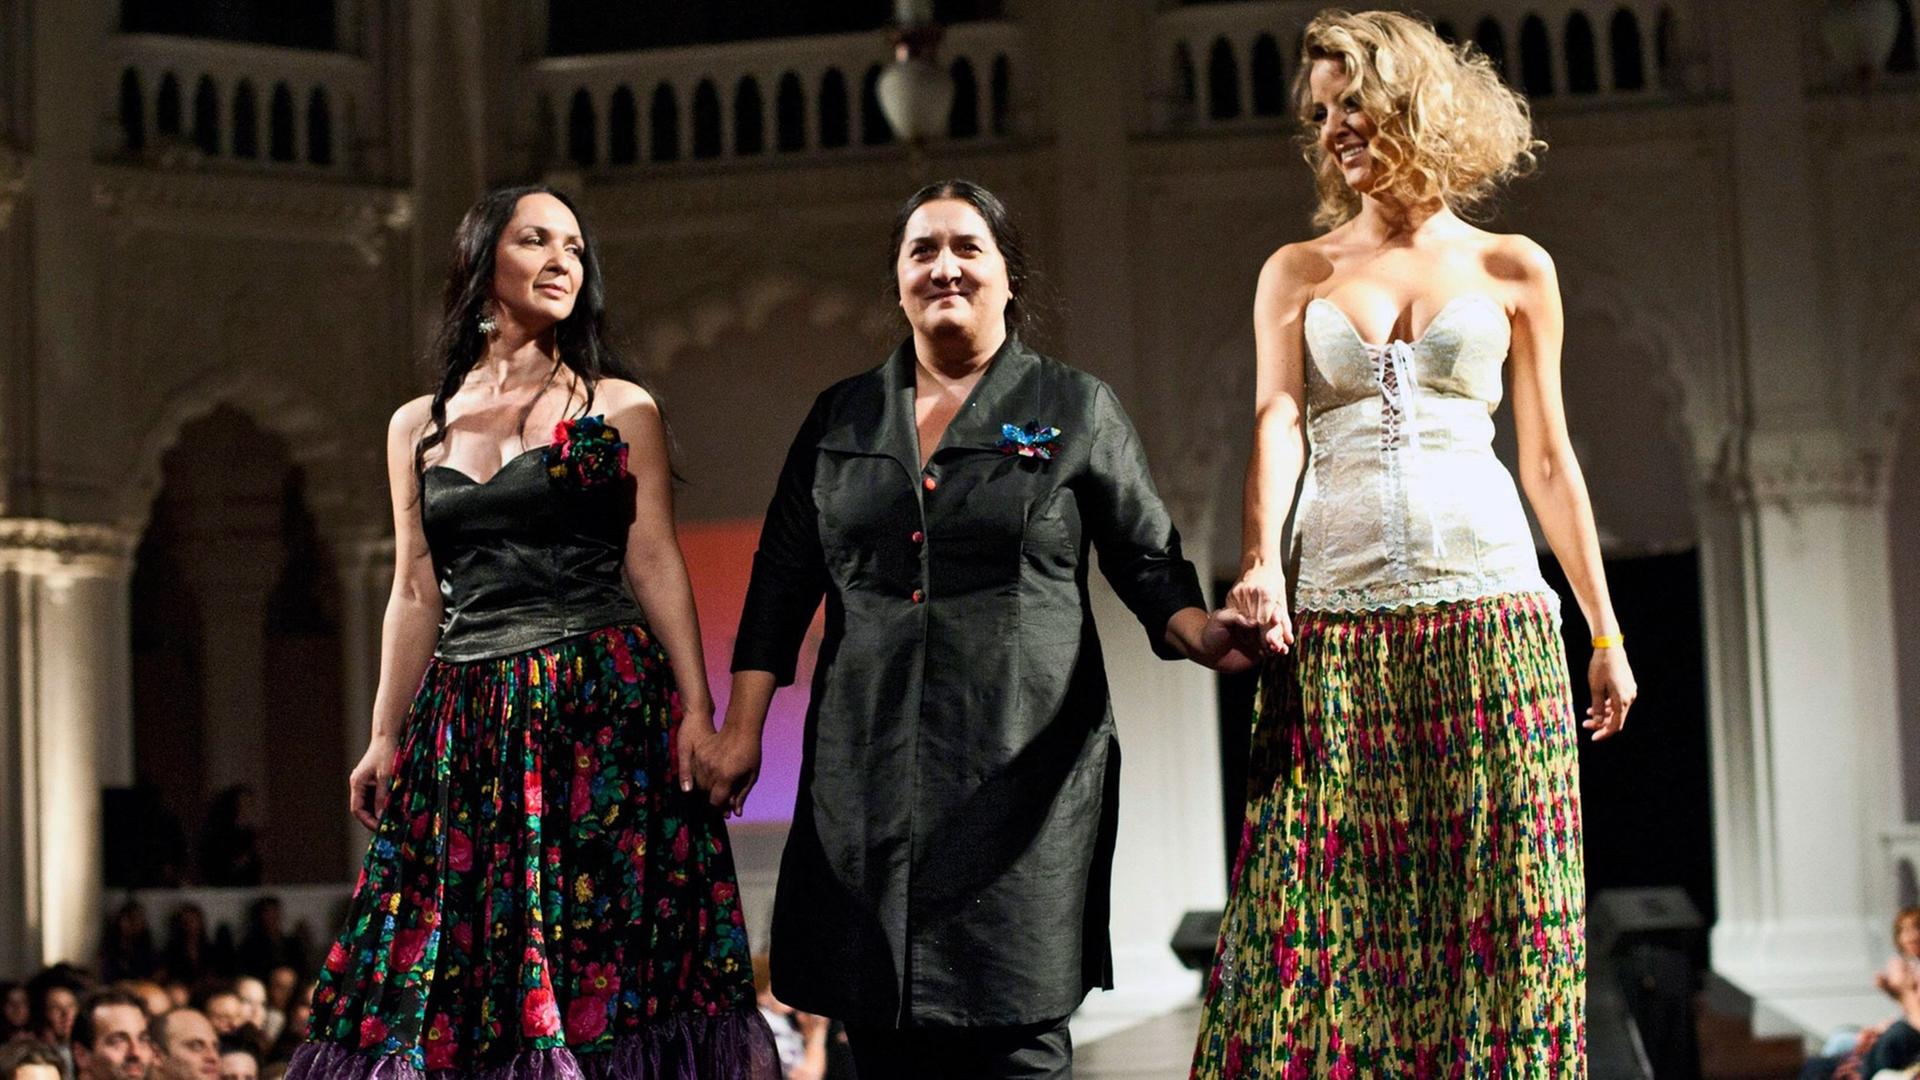 Roma-Designerin Erika Varga in Budapest während einer Modenschau.